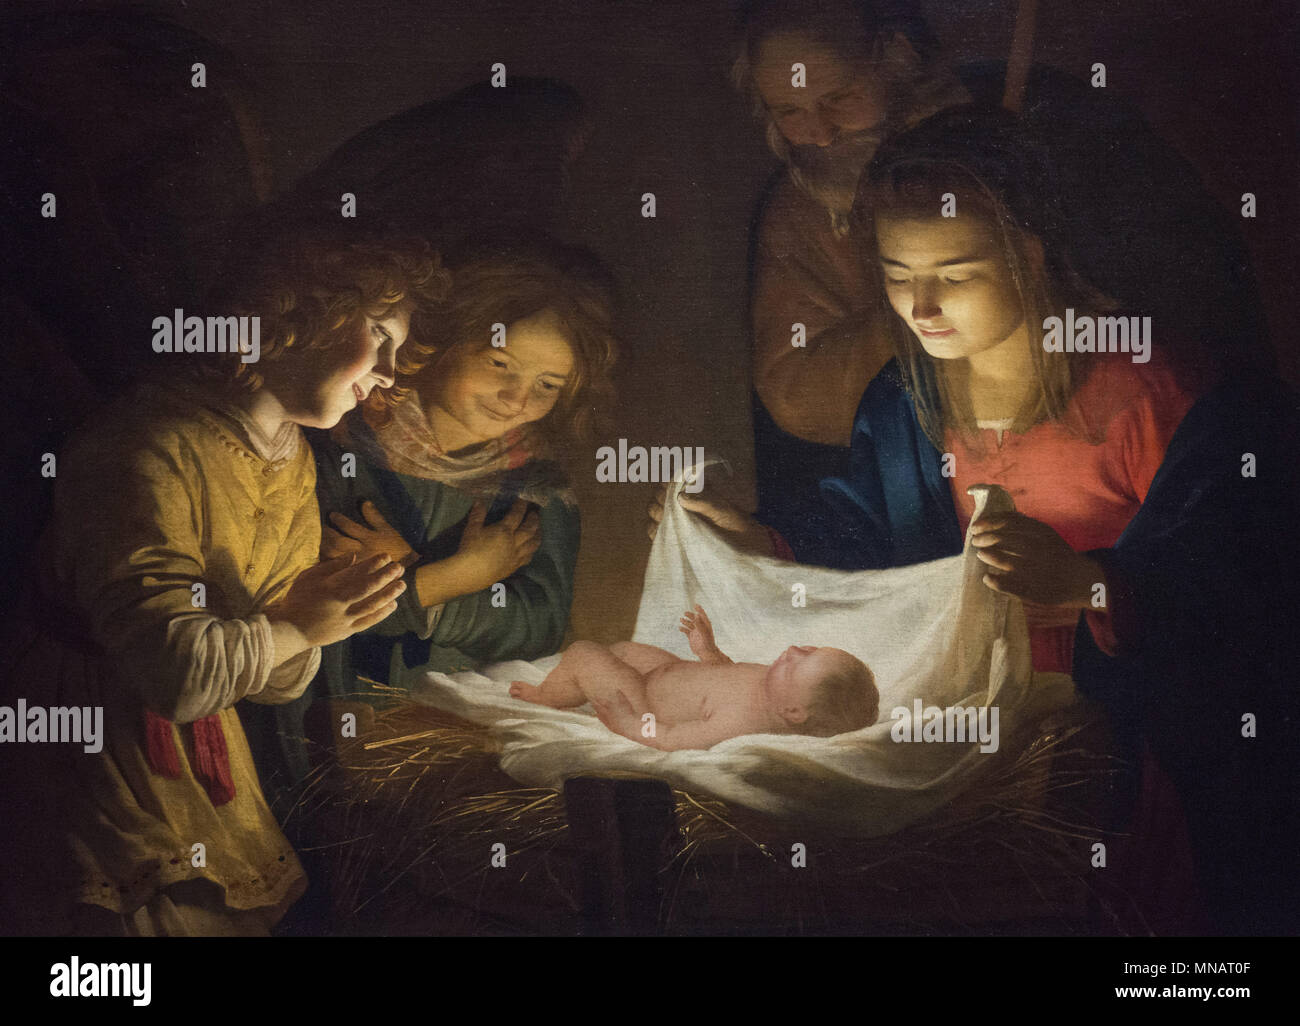 GHERARDO DELLE NOTTI - Adoration of the Child - c. 1619 - Uffizi Gallery - Galleria degli Uffizi Stock Photo